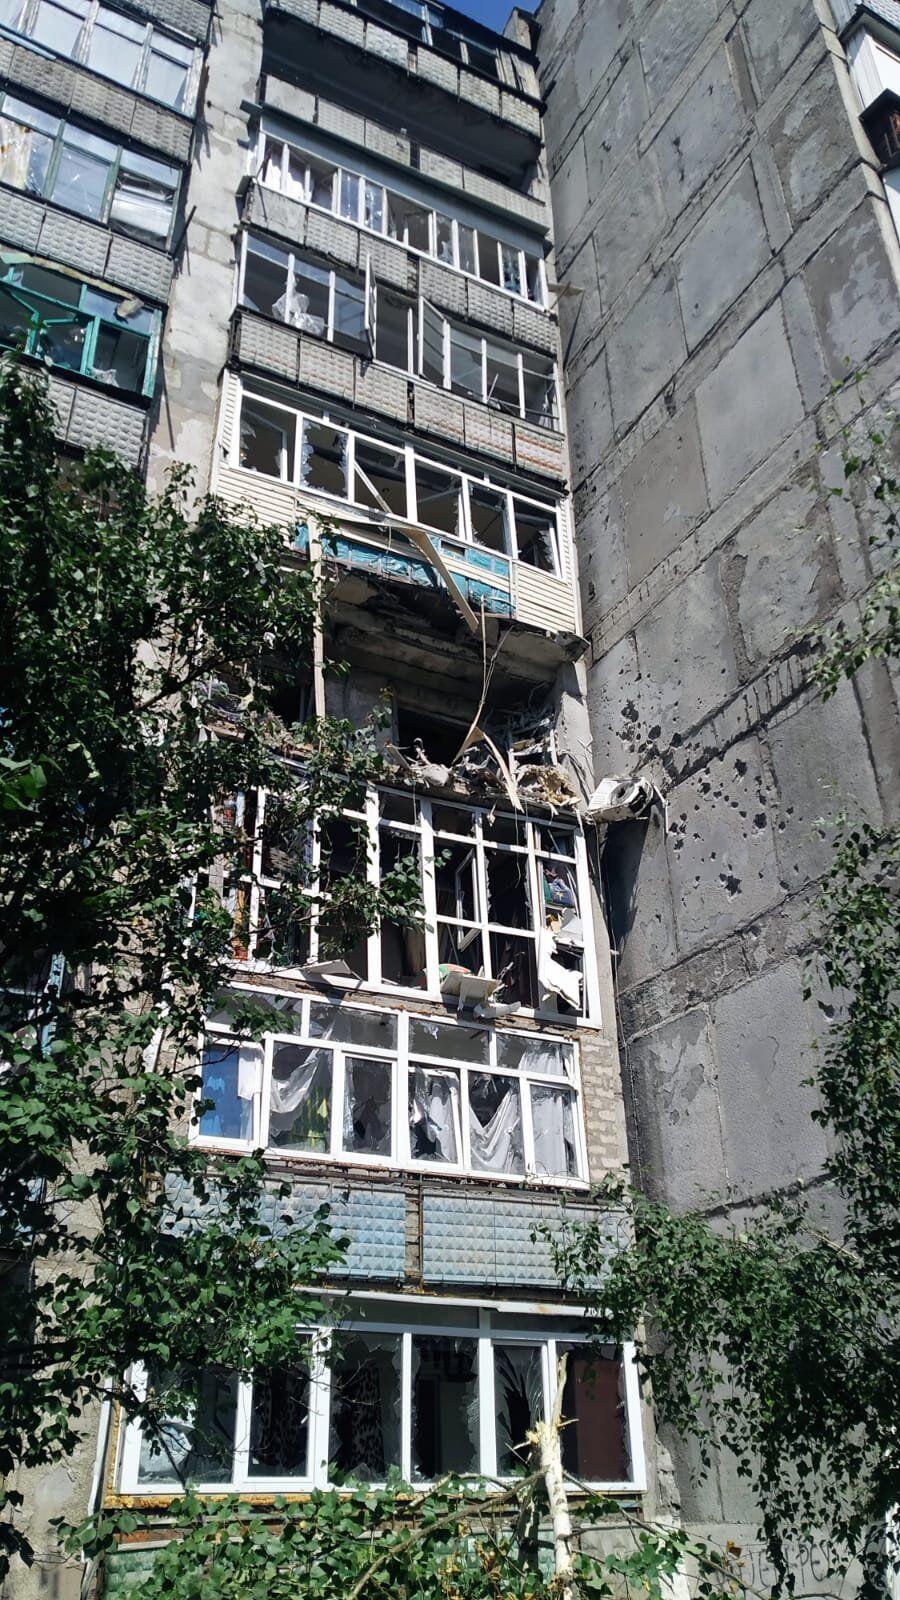 Погибли около 10 человек: оккупанты обстреляли остановку в Торецке Донецкой области (фото)